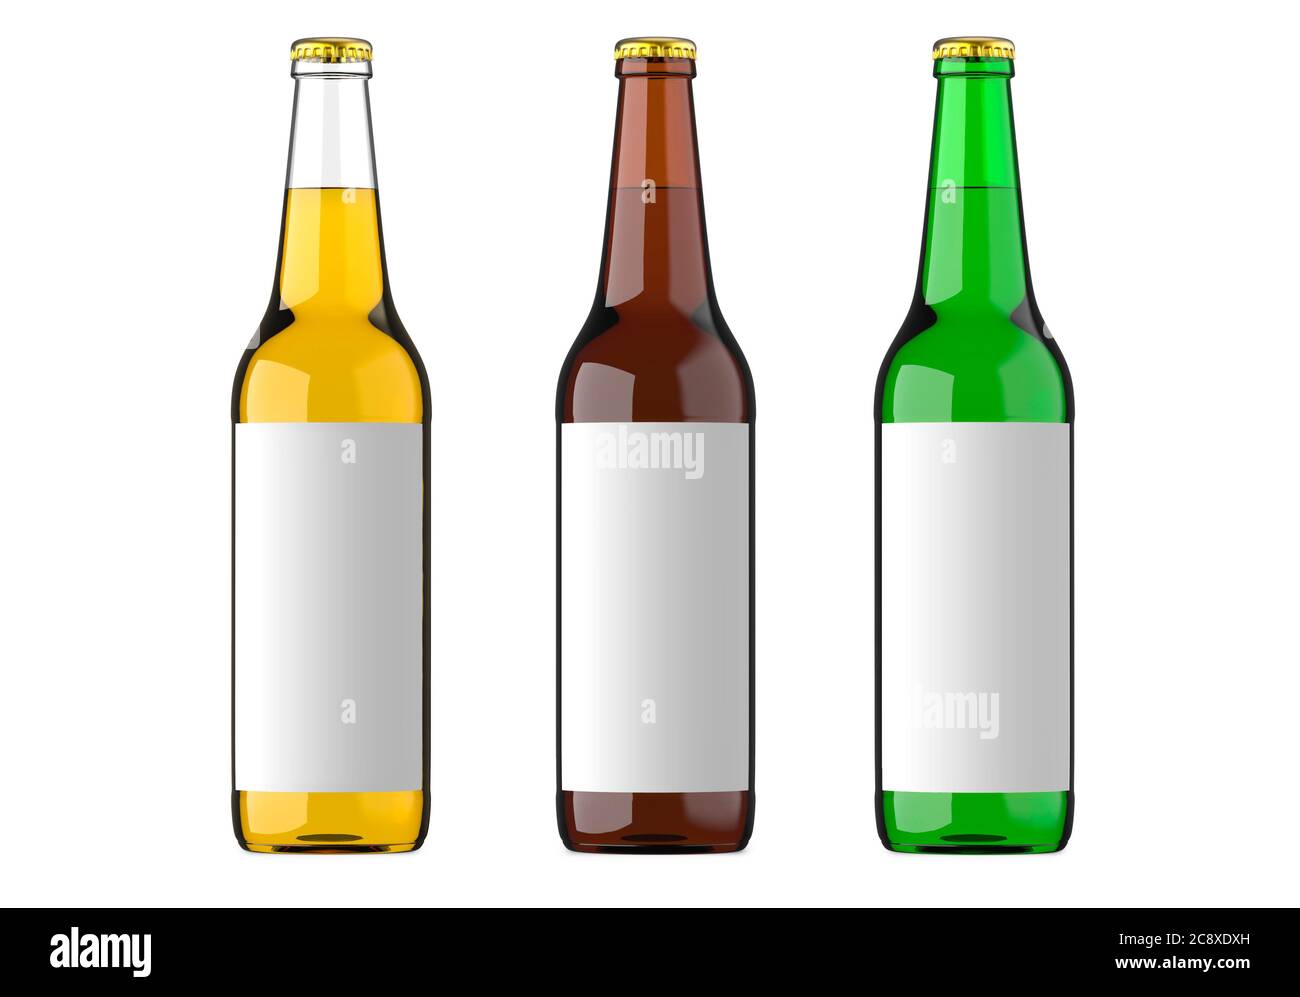 Cerveza embotellada de color amarillo, verde y marrón o bebidas o bebidas  carbonatadas con etiqueta blanca. Studio 3D render, aislado sobre fondo  blanco Fotografía de stock - Alamy